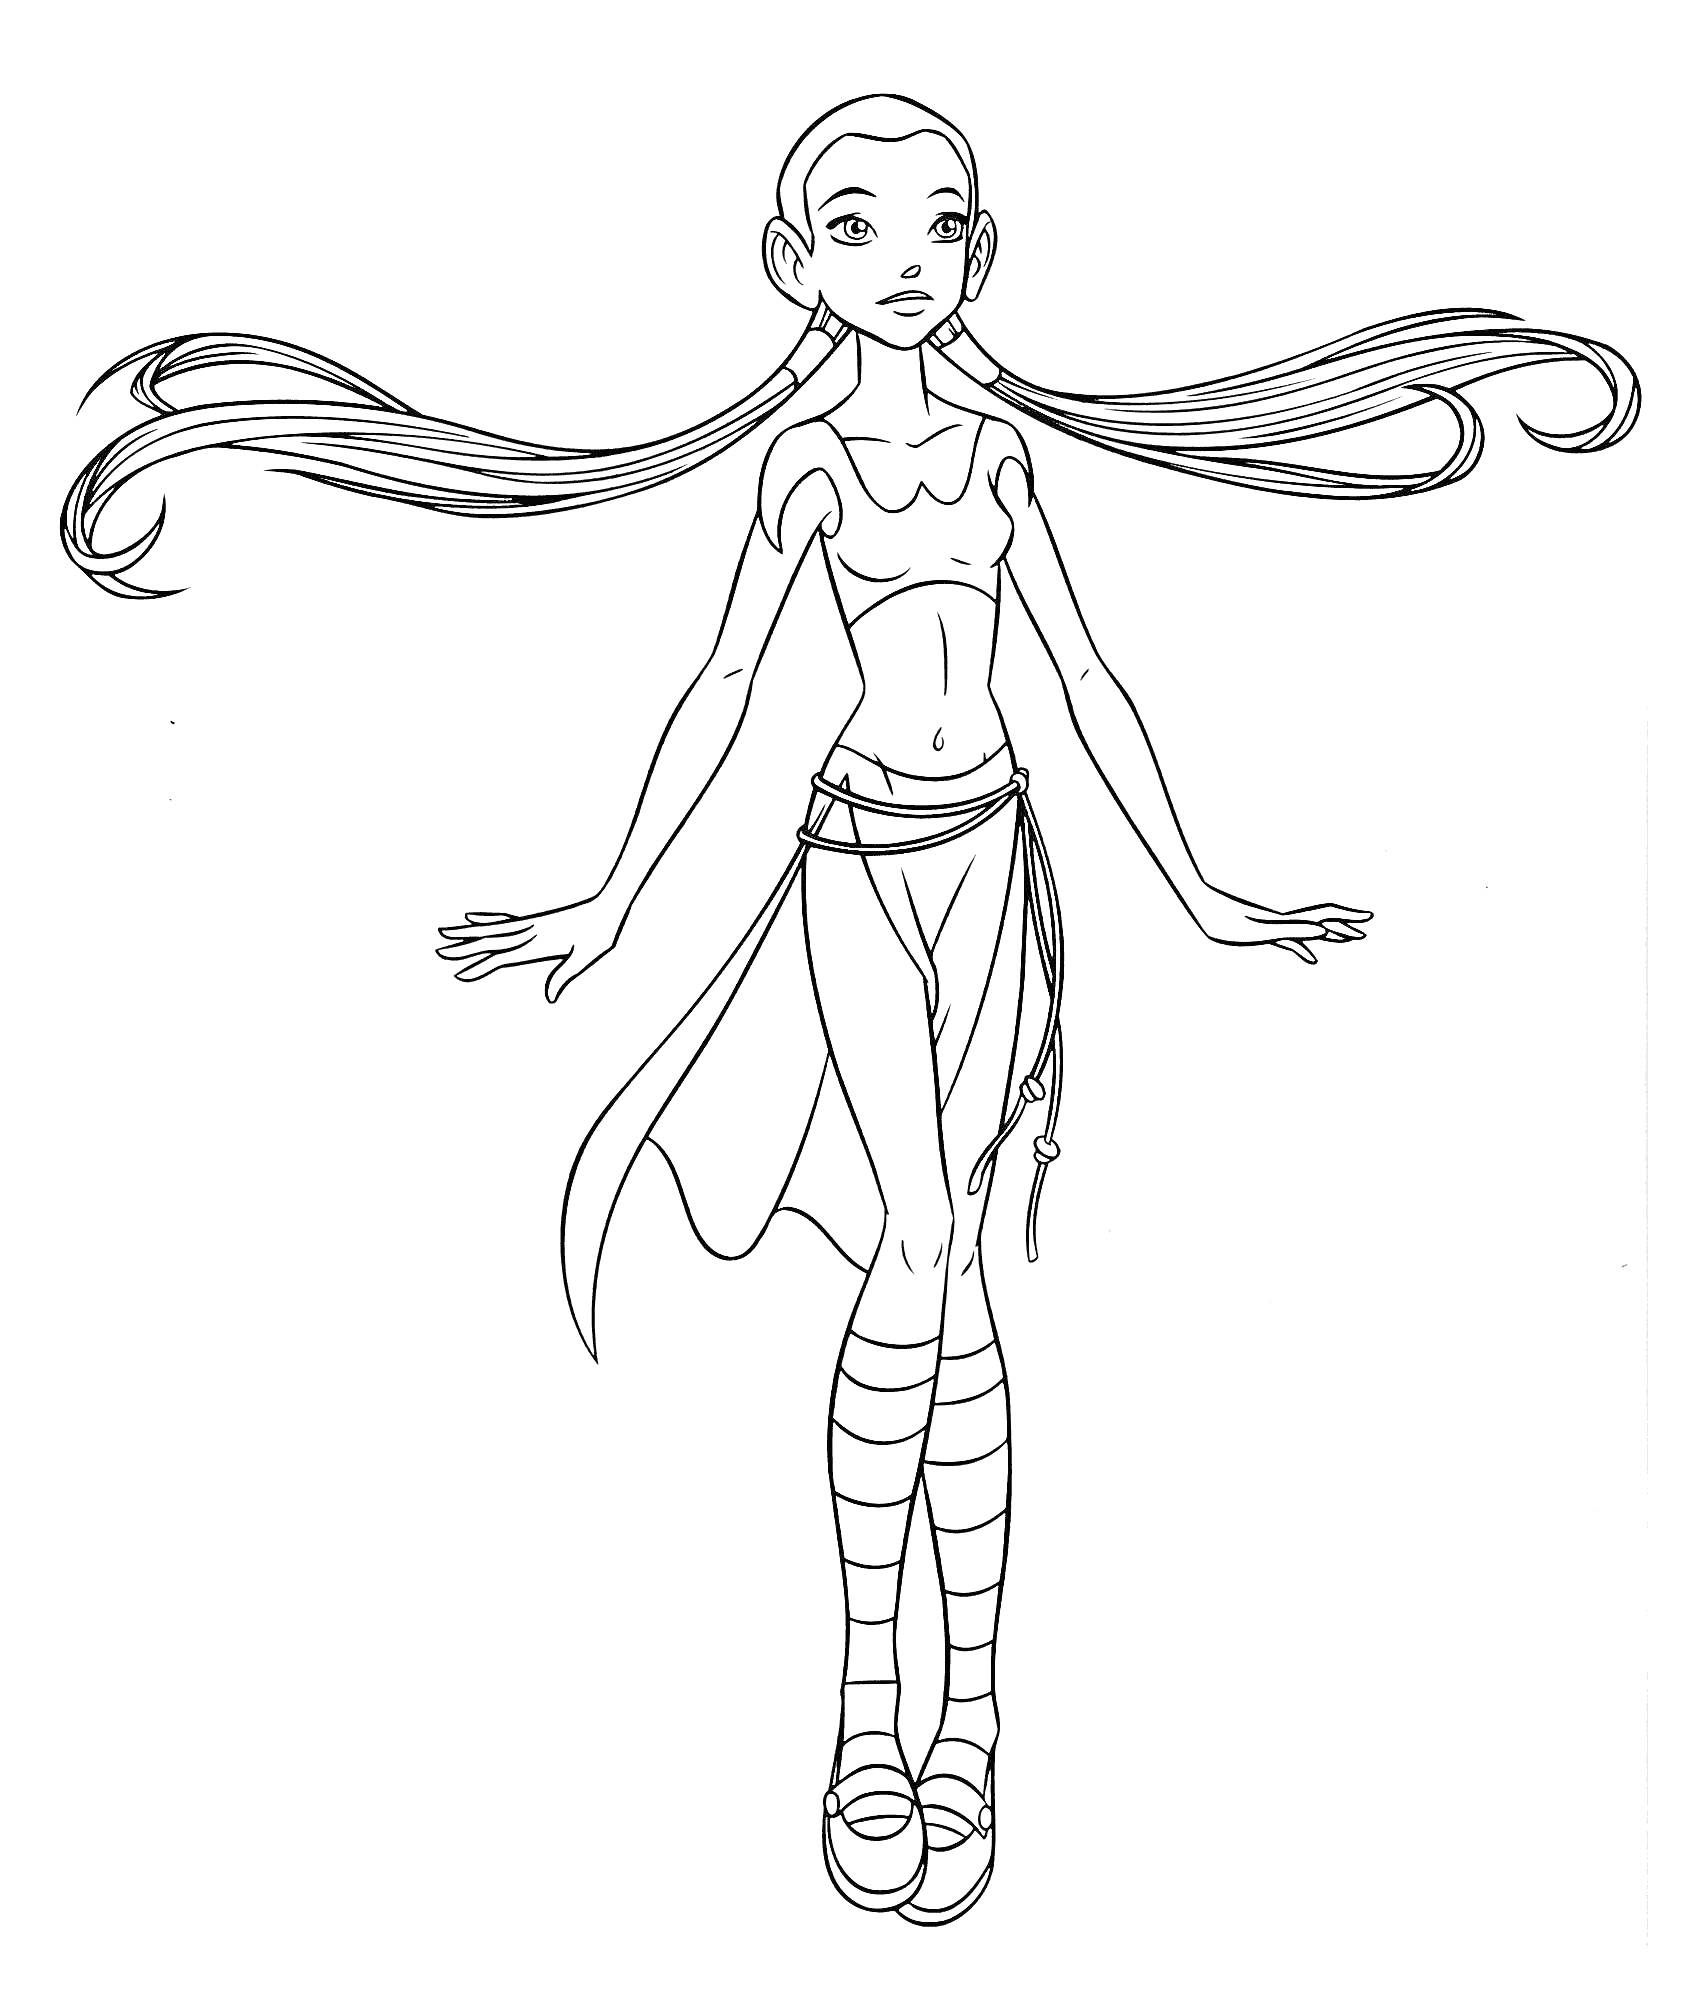 Девочка-волшебница с длинными волосами, в топе и юбке, стоящая на ногах с вытянутыми рукам